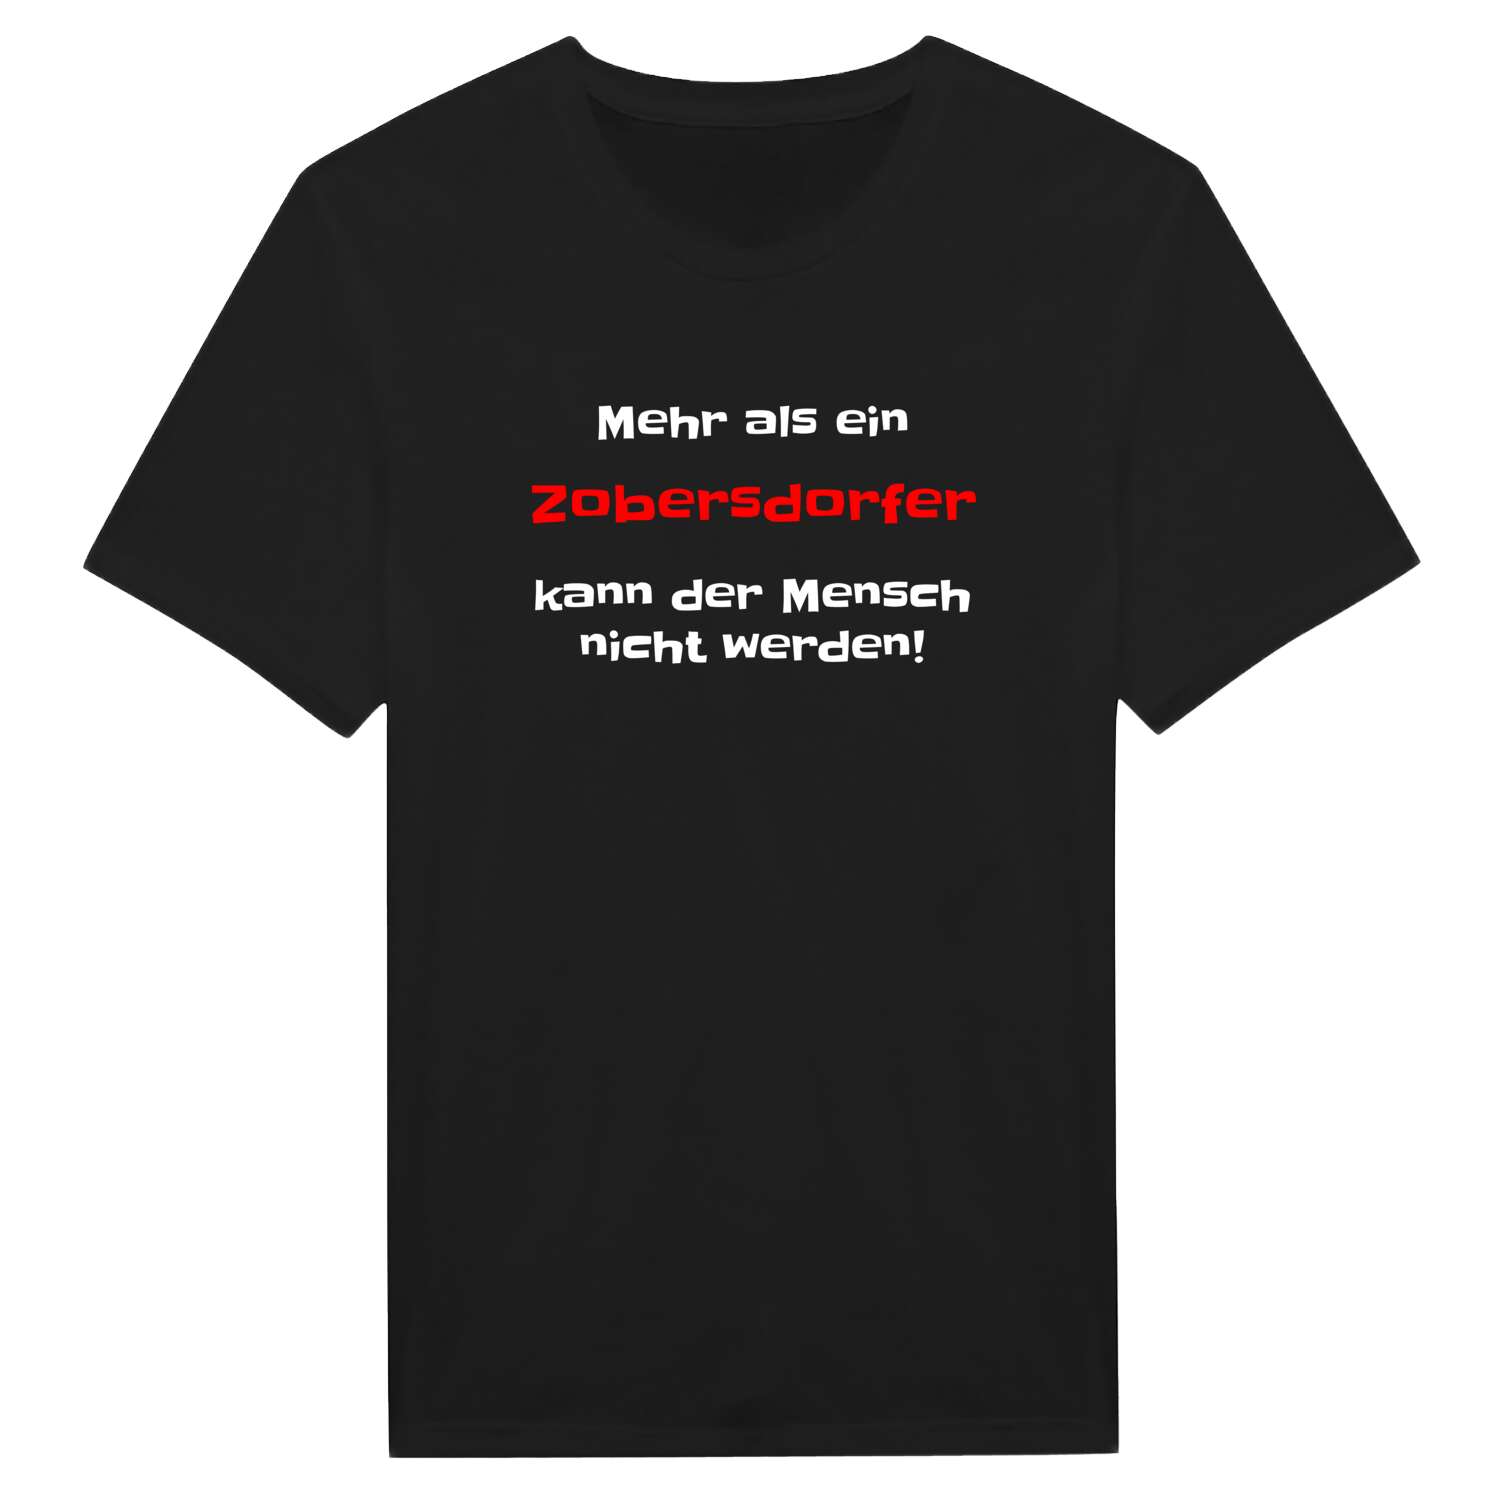 Zobersdorf T-Shirt »Mehr als ein«